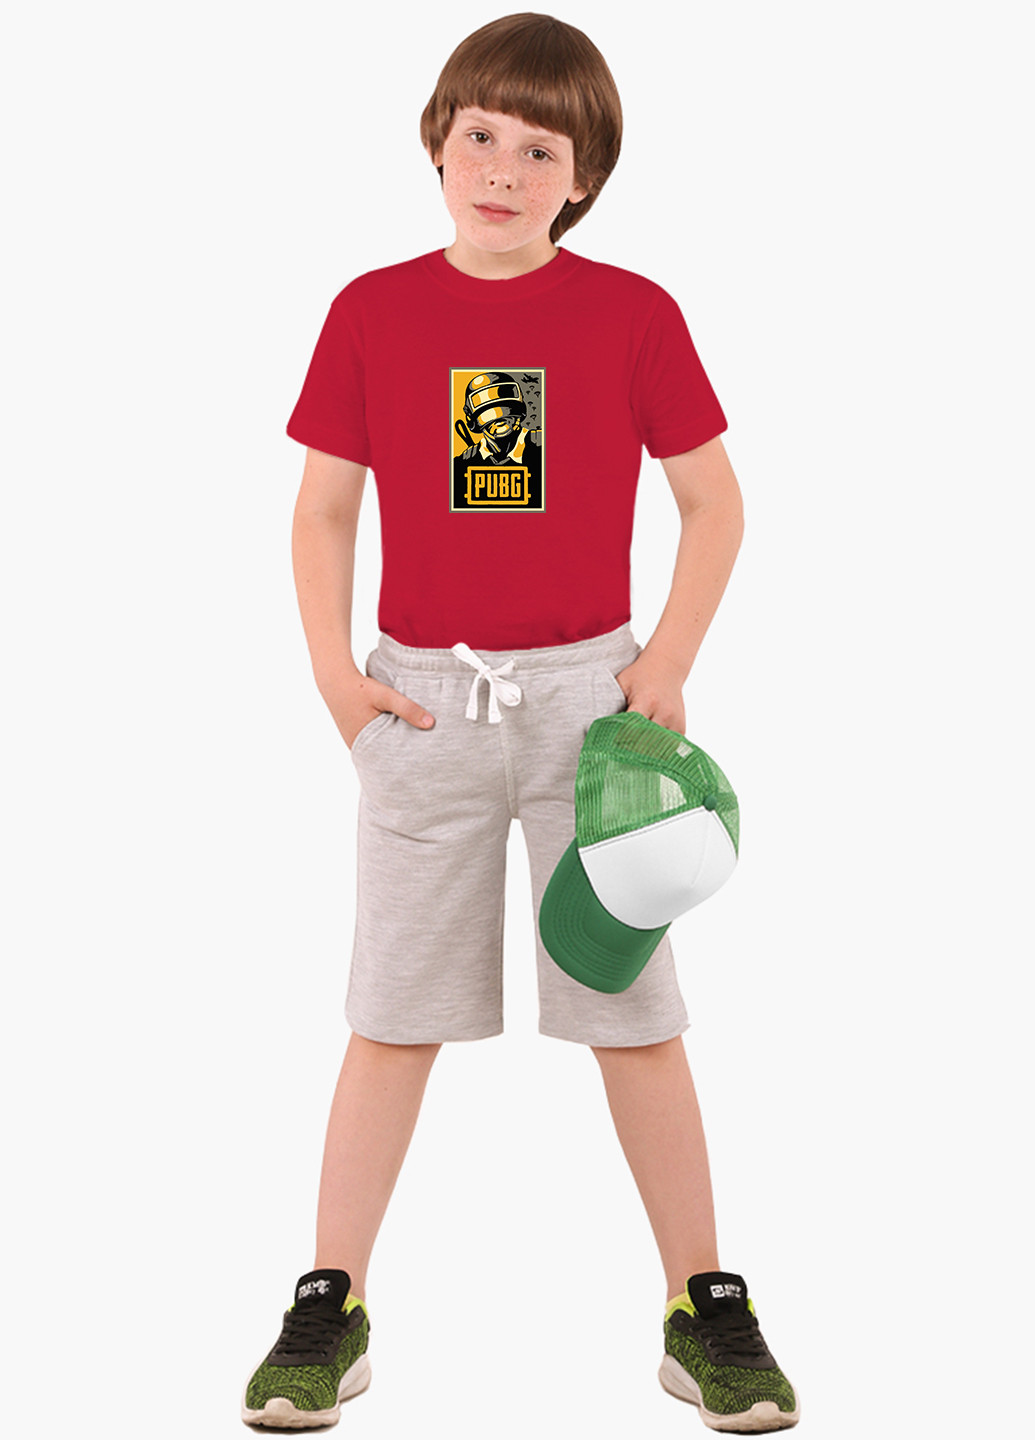 Червона демісезонна футболка дитяча пубг пабг (pubg) (9224-1179) MobiPrint